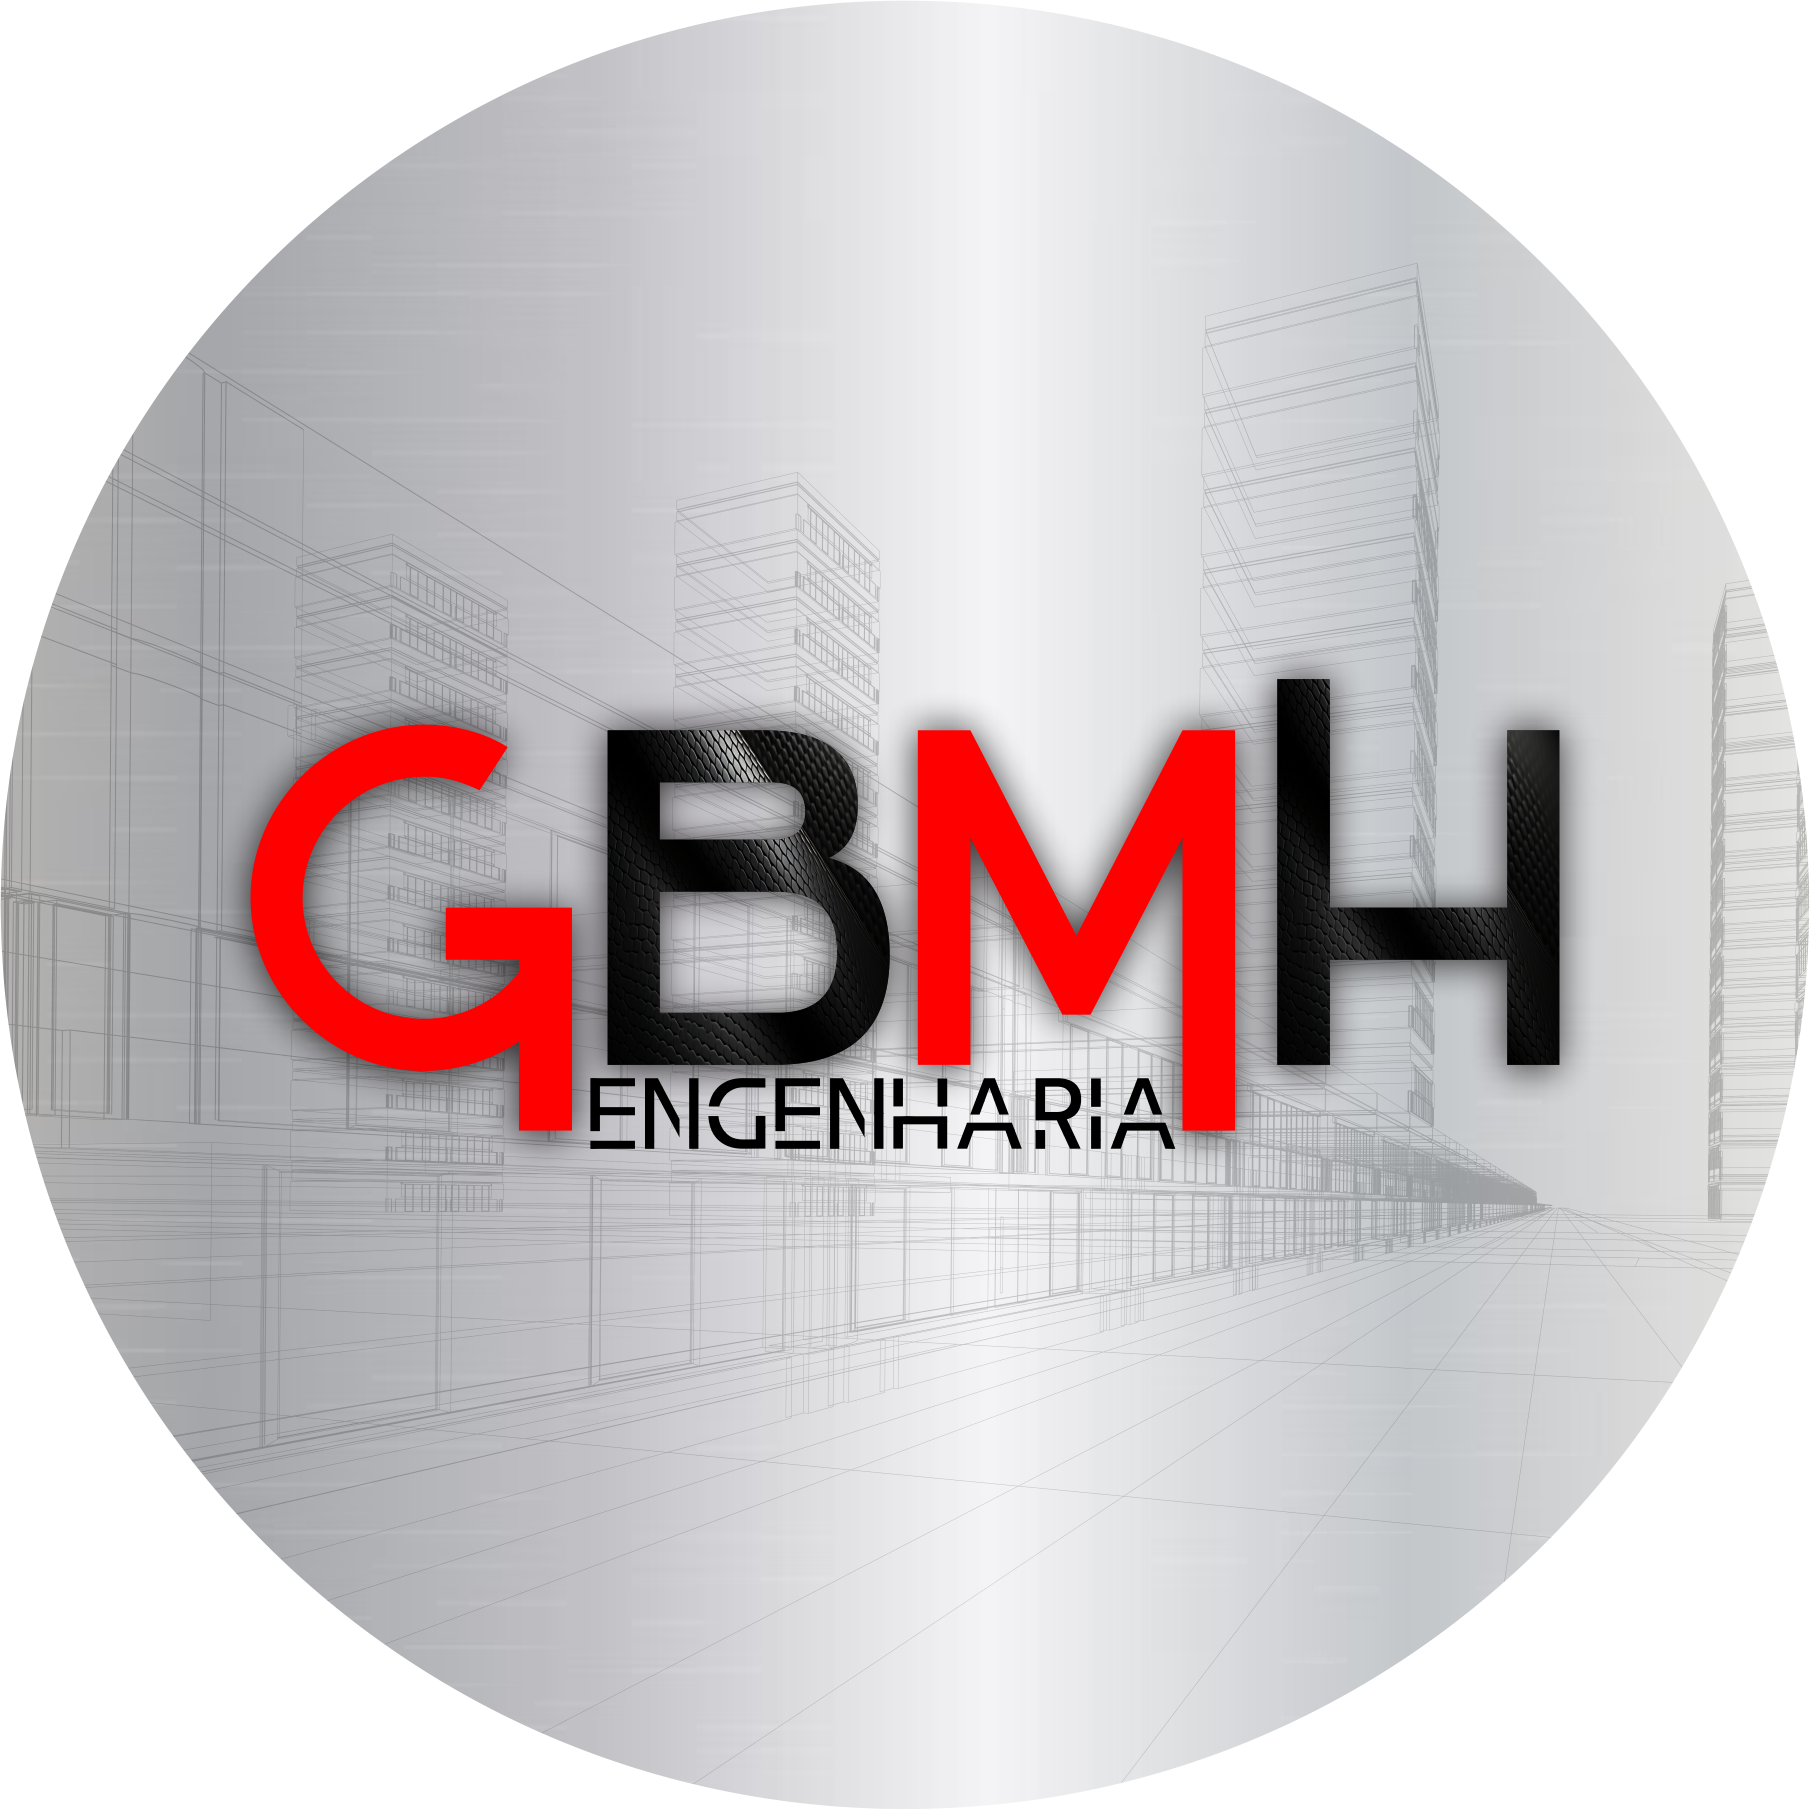 GBMH Engenharia